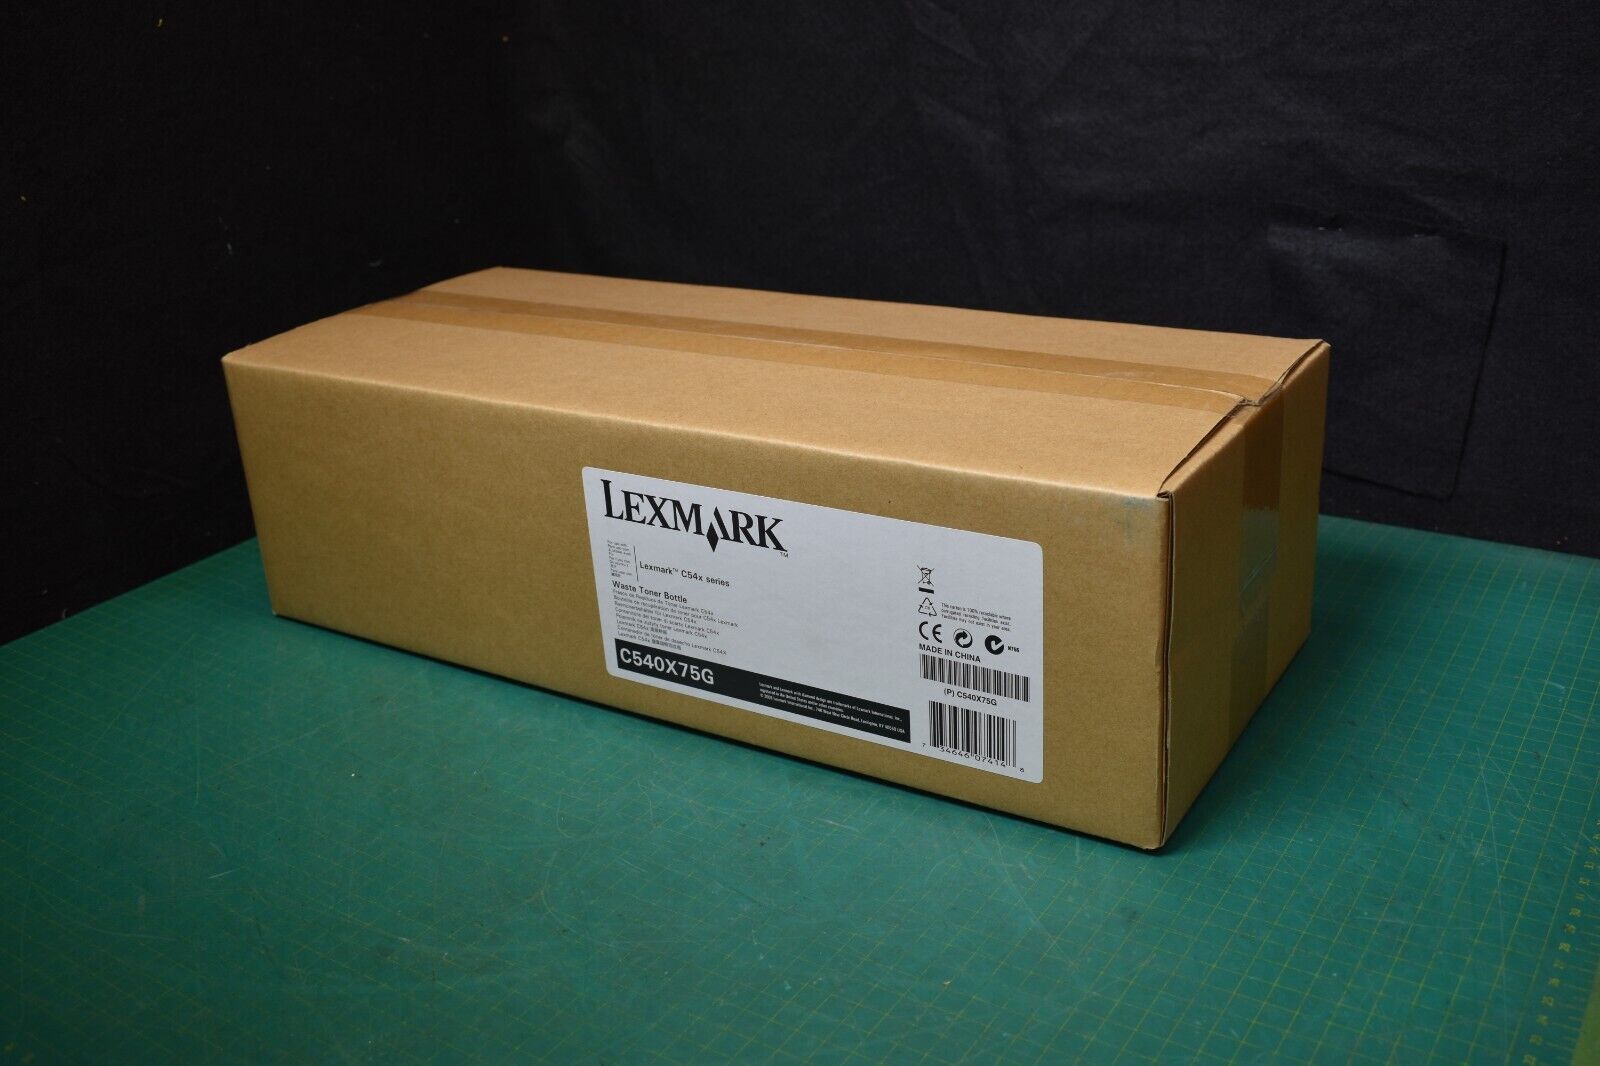 New In Box Lexmark C540X75G Waste Toner Container C2132 C540 C543 C544 C546 C310